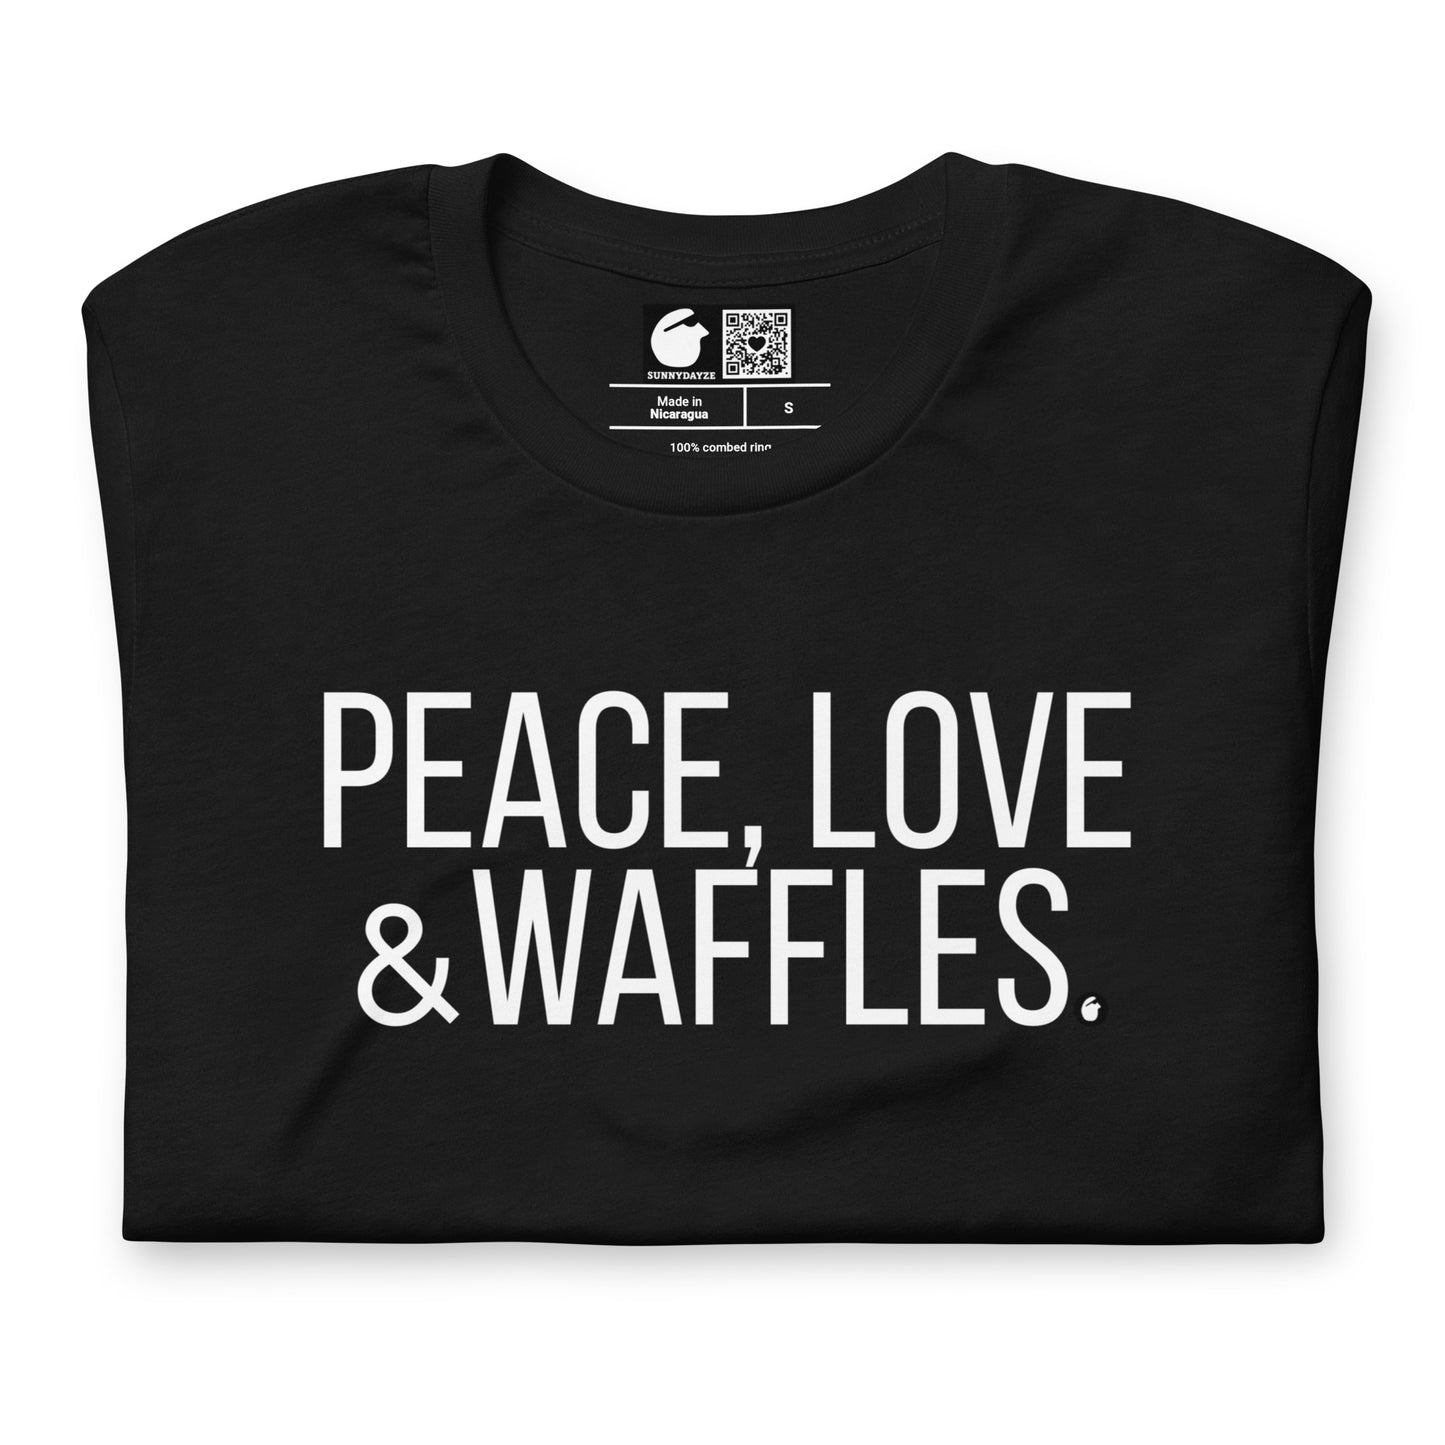 WAFFLES Short-Sleeve Unisex t-shirt